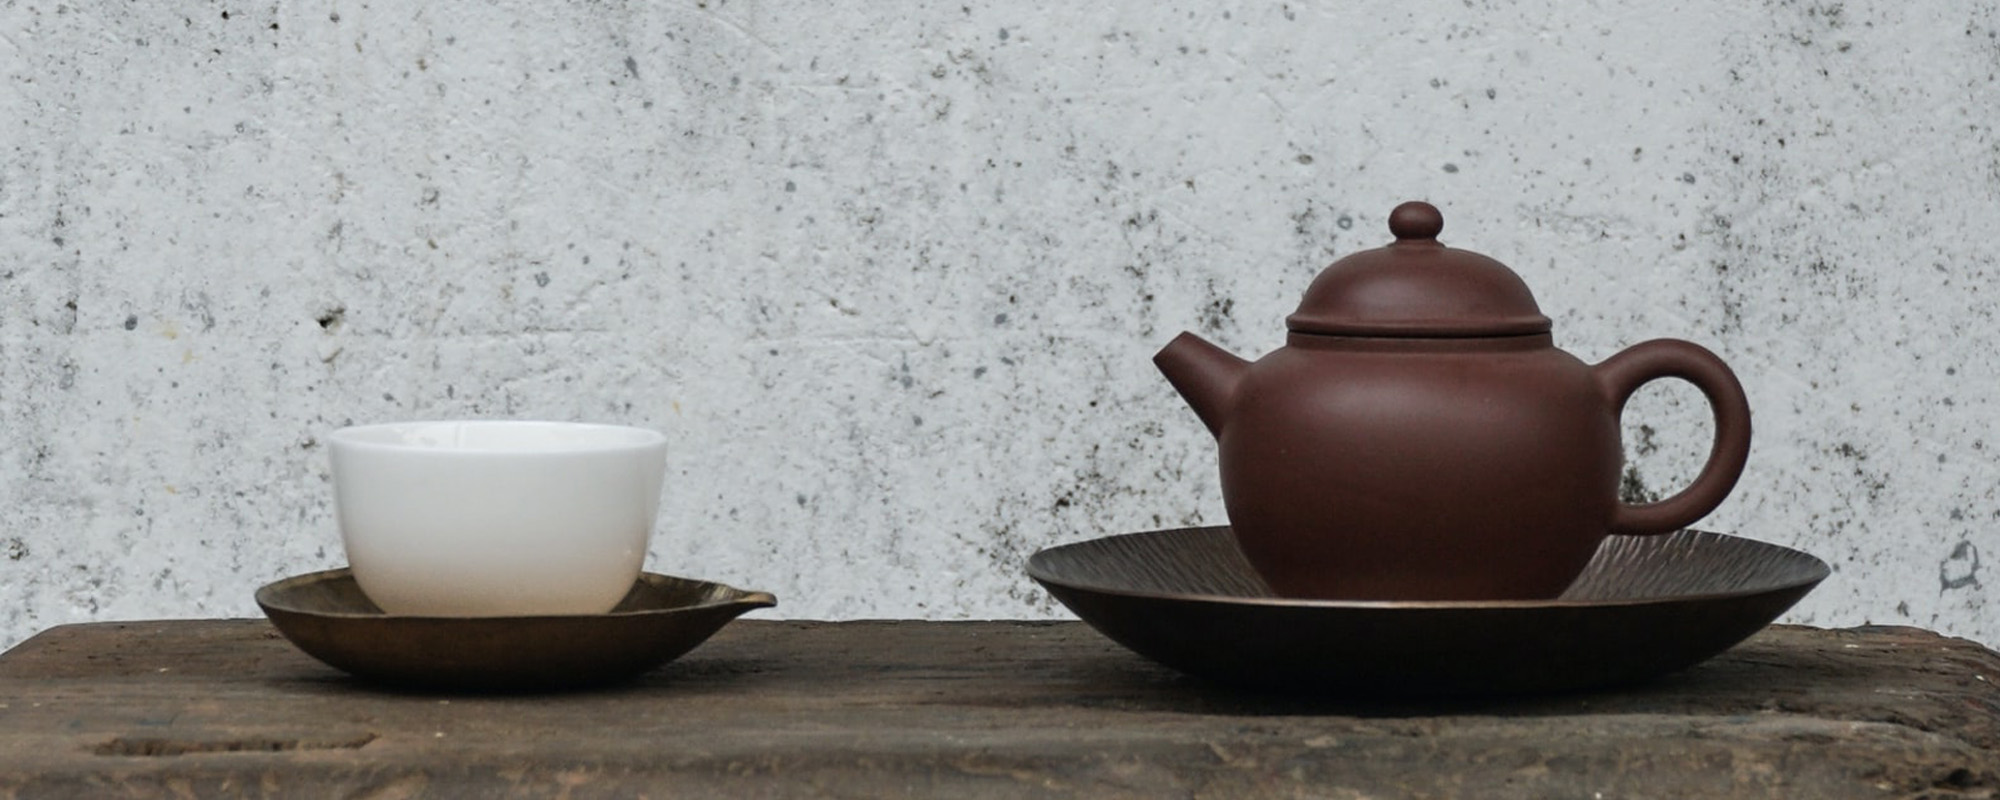 Teekanne und Teetasse auf einem Holztisch